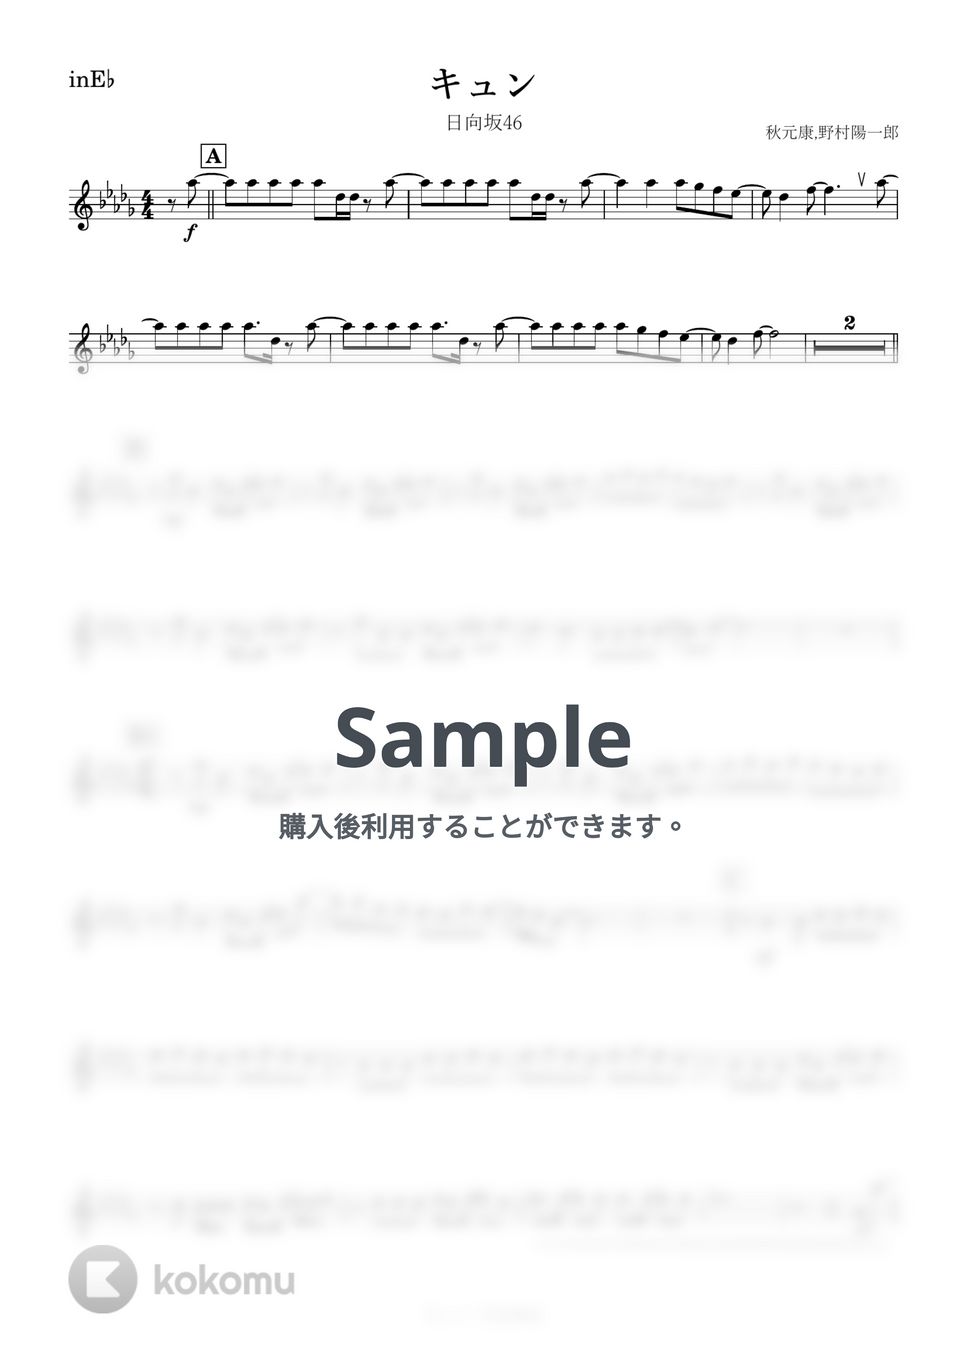 日向坂46 - キュン (E♭) by kanamusic